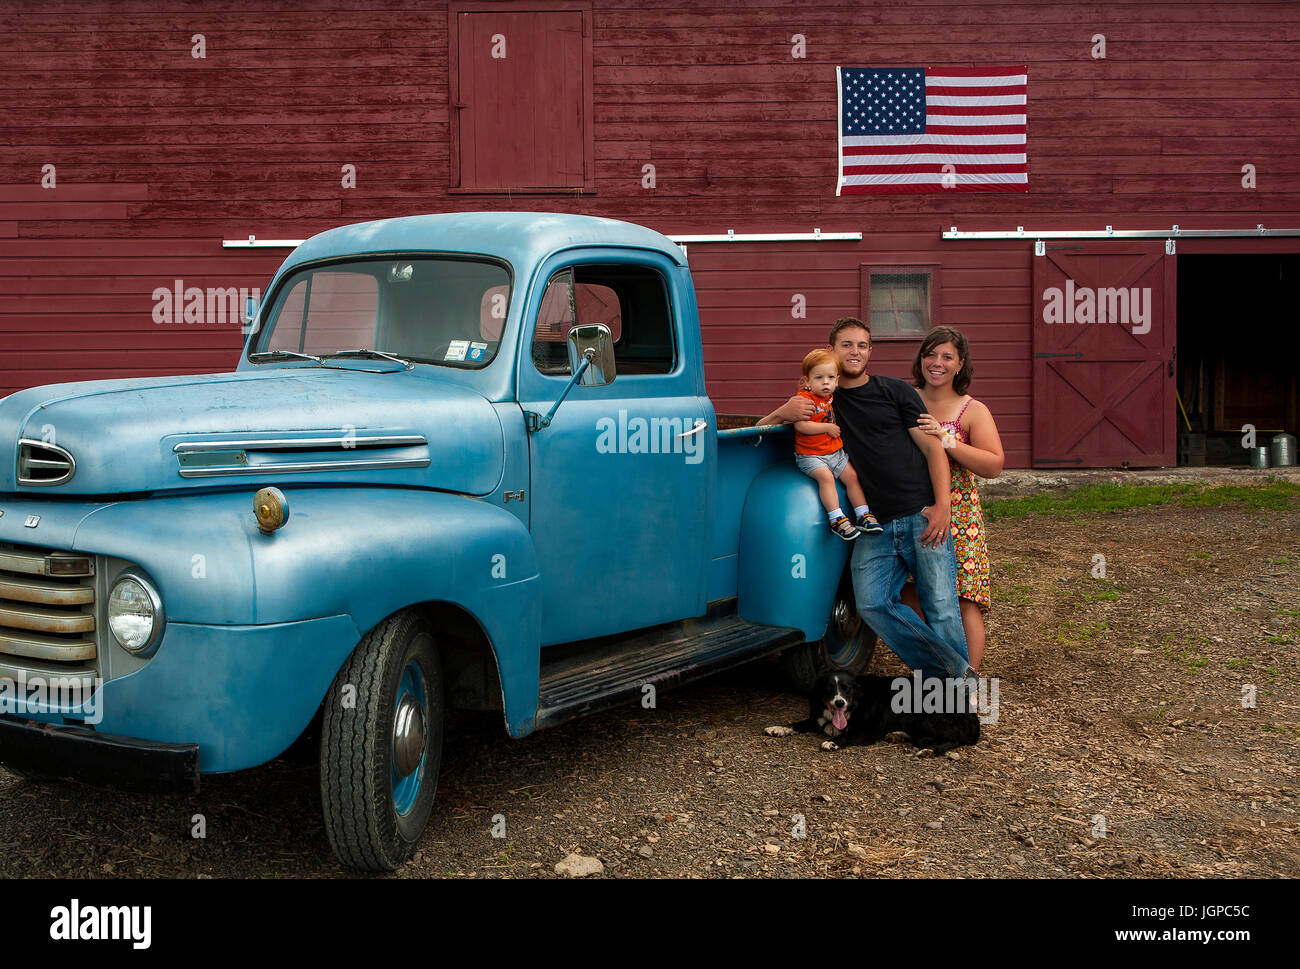 American Azienda agricola di famiglia con blu vintage carrello nella parte anteriore del granaio rosso con bandiera americana, cane a piedi, rosso bimbi con testa Foto Stock